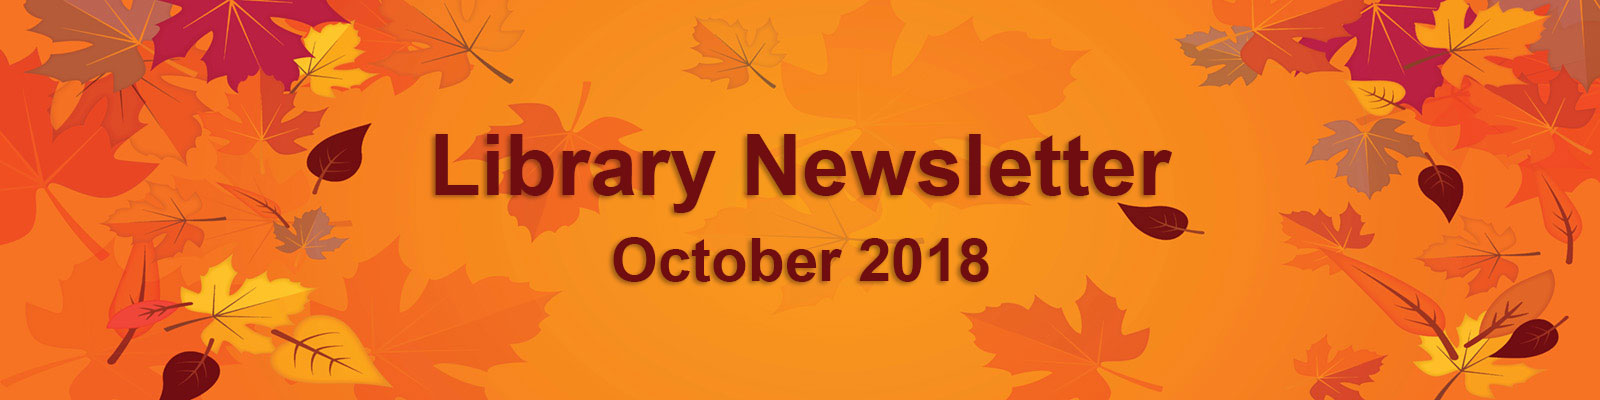 Library Newsletter - September 2018